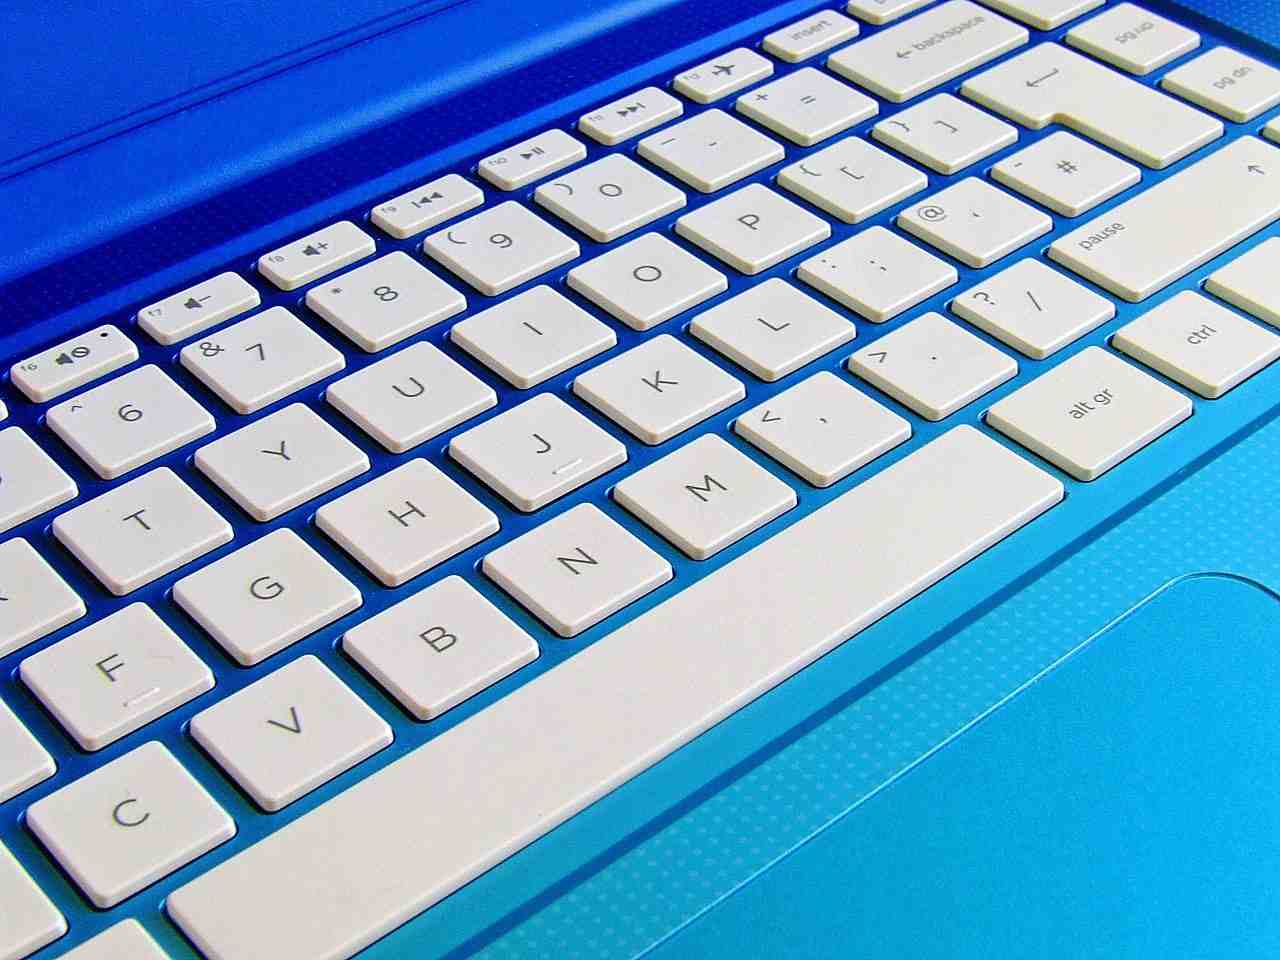 clavier d'ordinateur portable, clavier d'ordinateur, clavier blanc